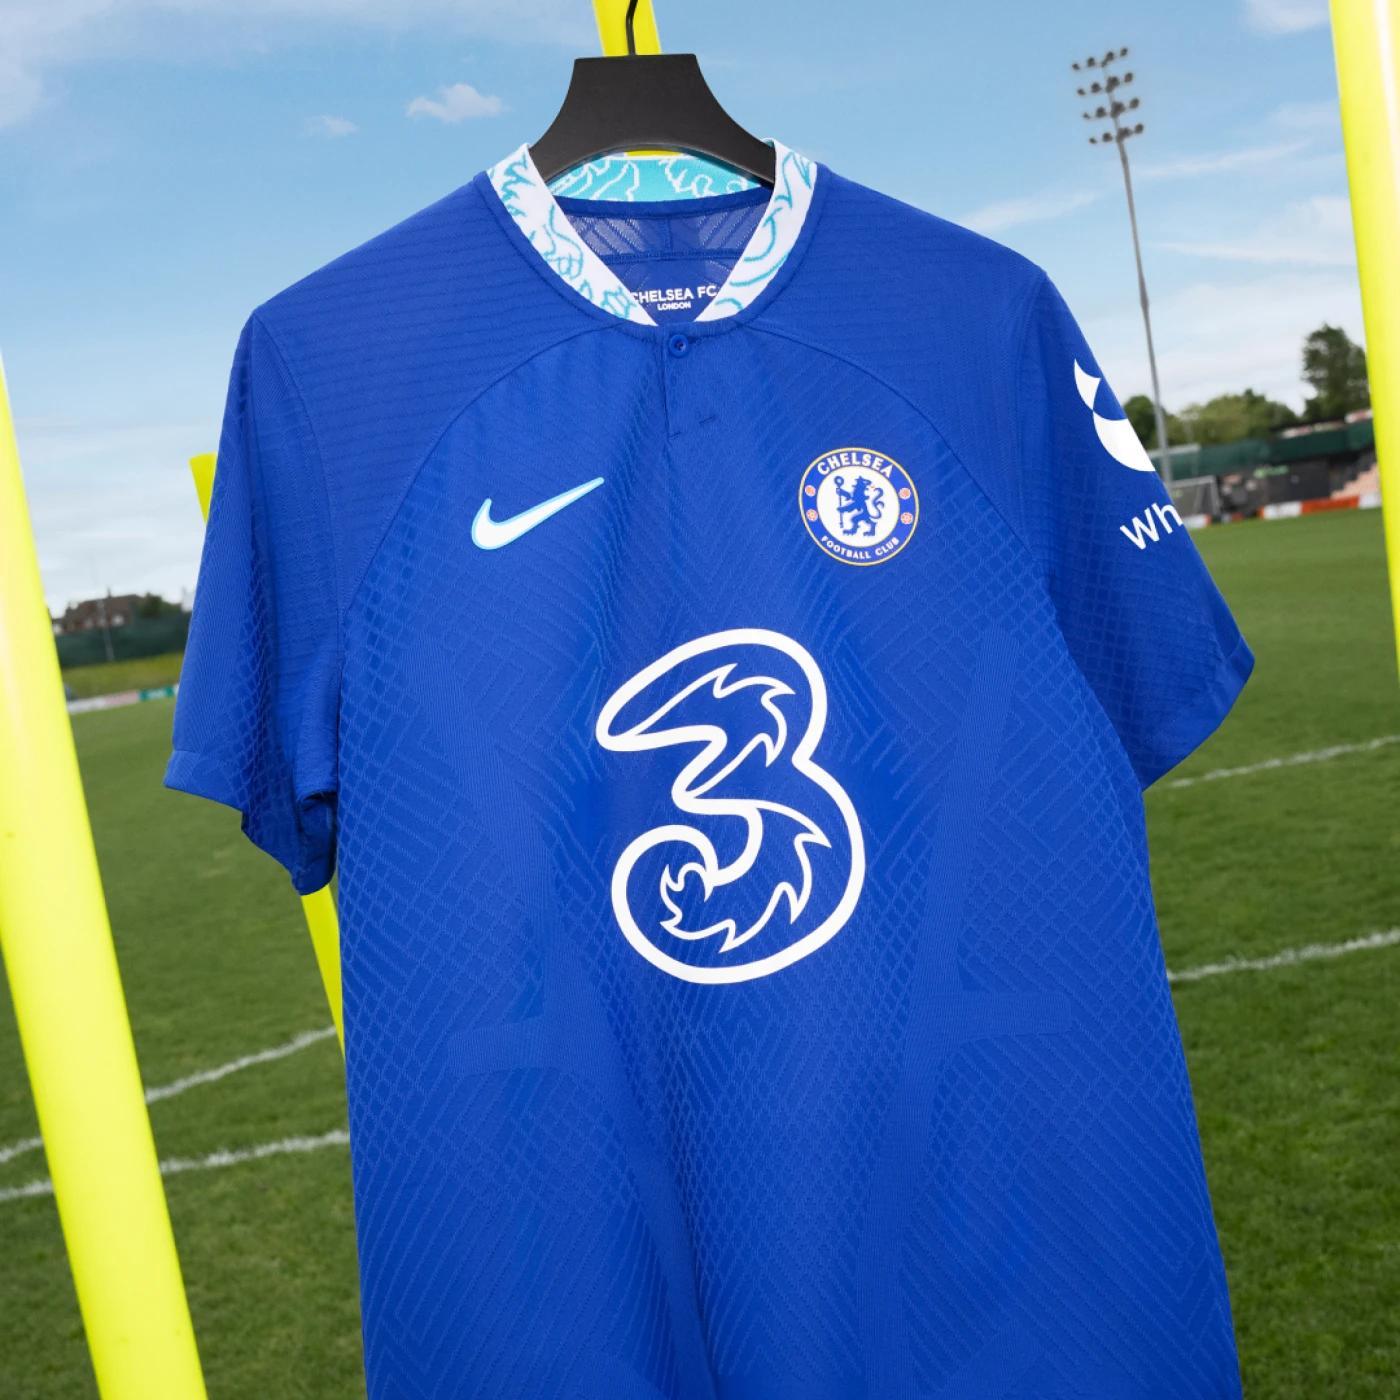 New Chelsea Kit 22/23